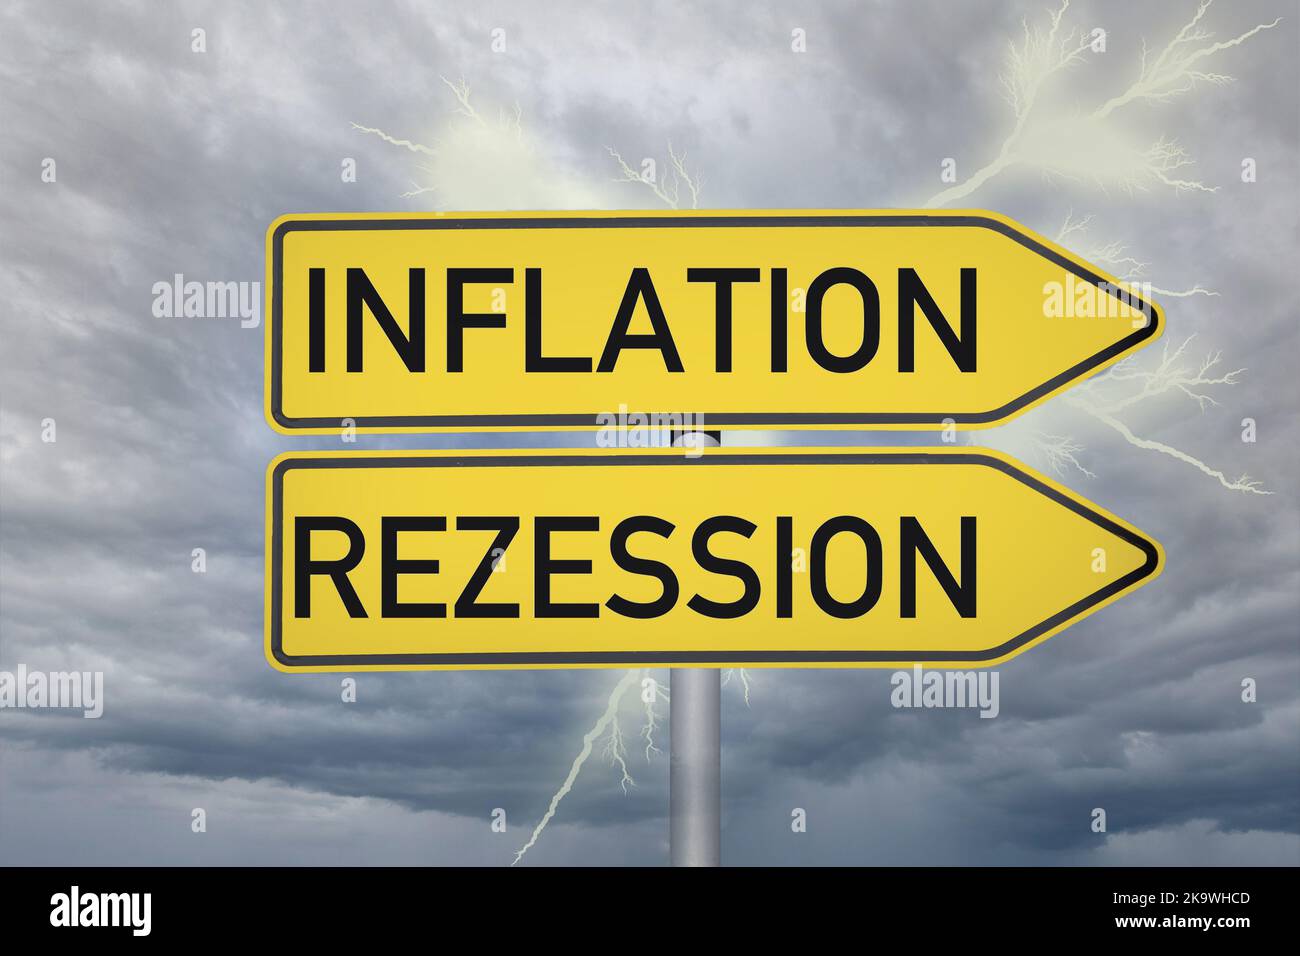 Symbolbild Rezession: Düsterer Himmel mit Blitz und Schilder die in Richtung Inflation und Rezession zeigen (Composing) Stock Photo